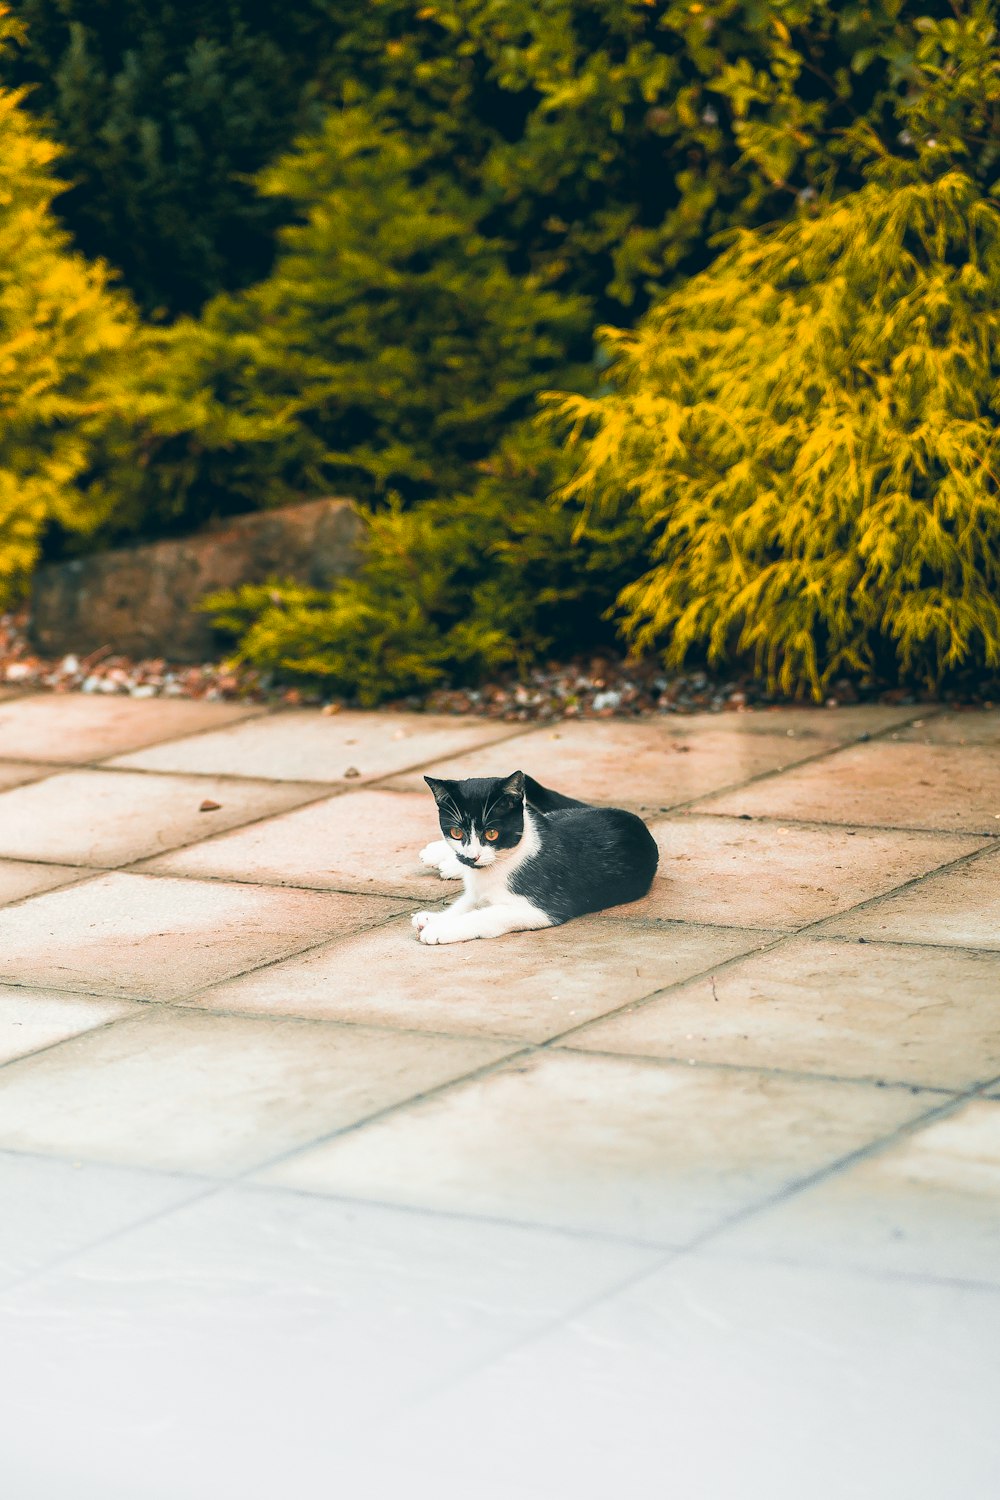 a cat lying on a sidewalk